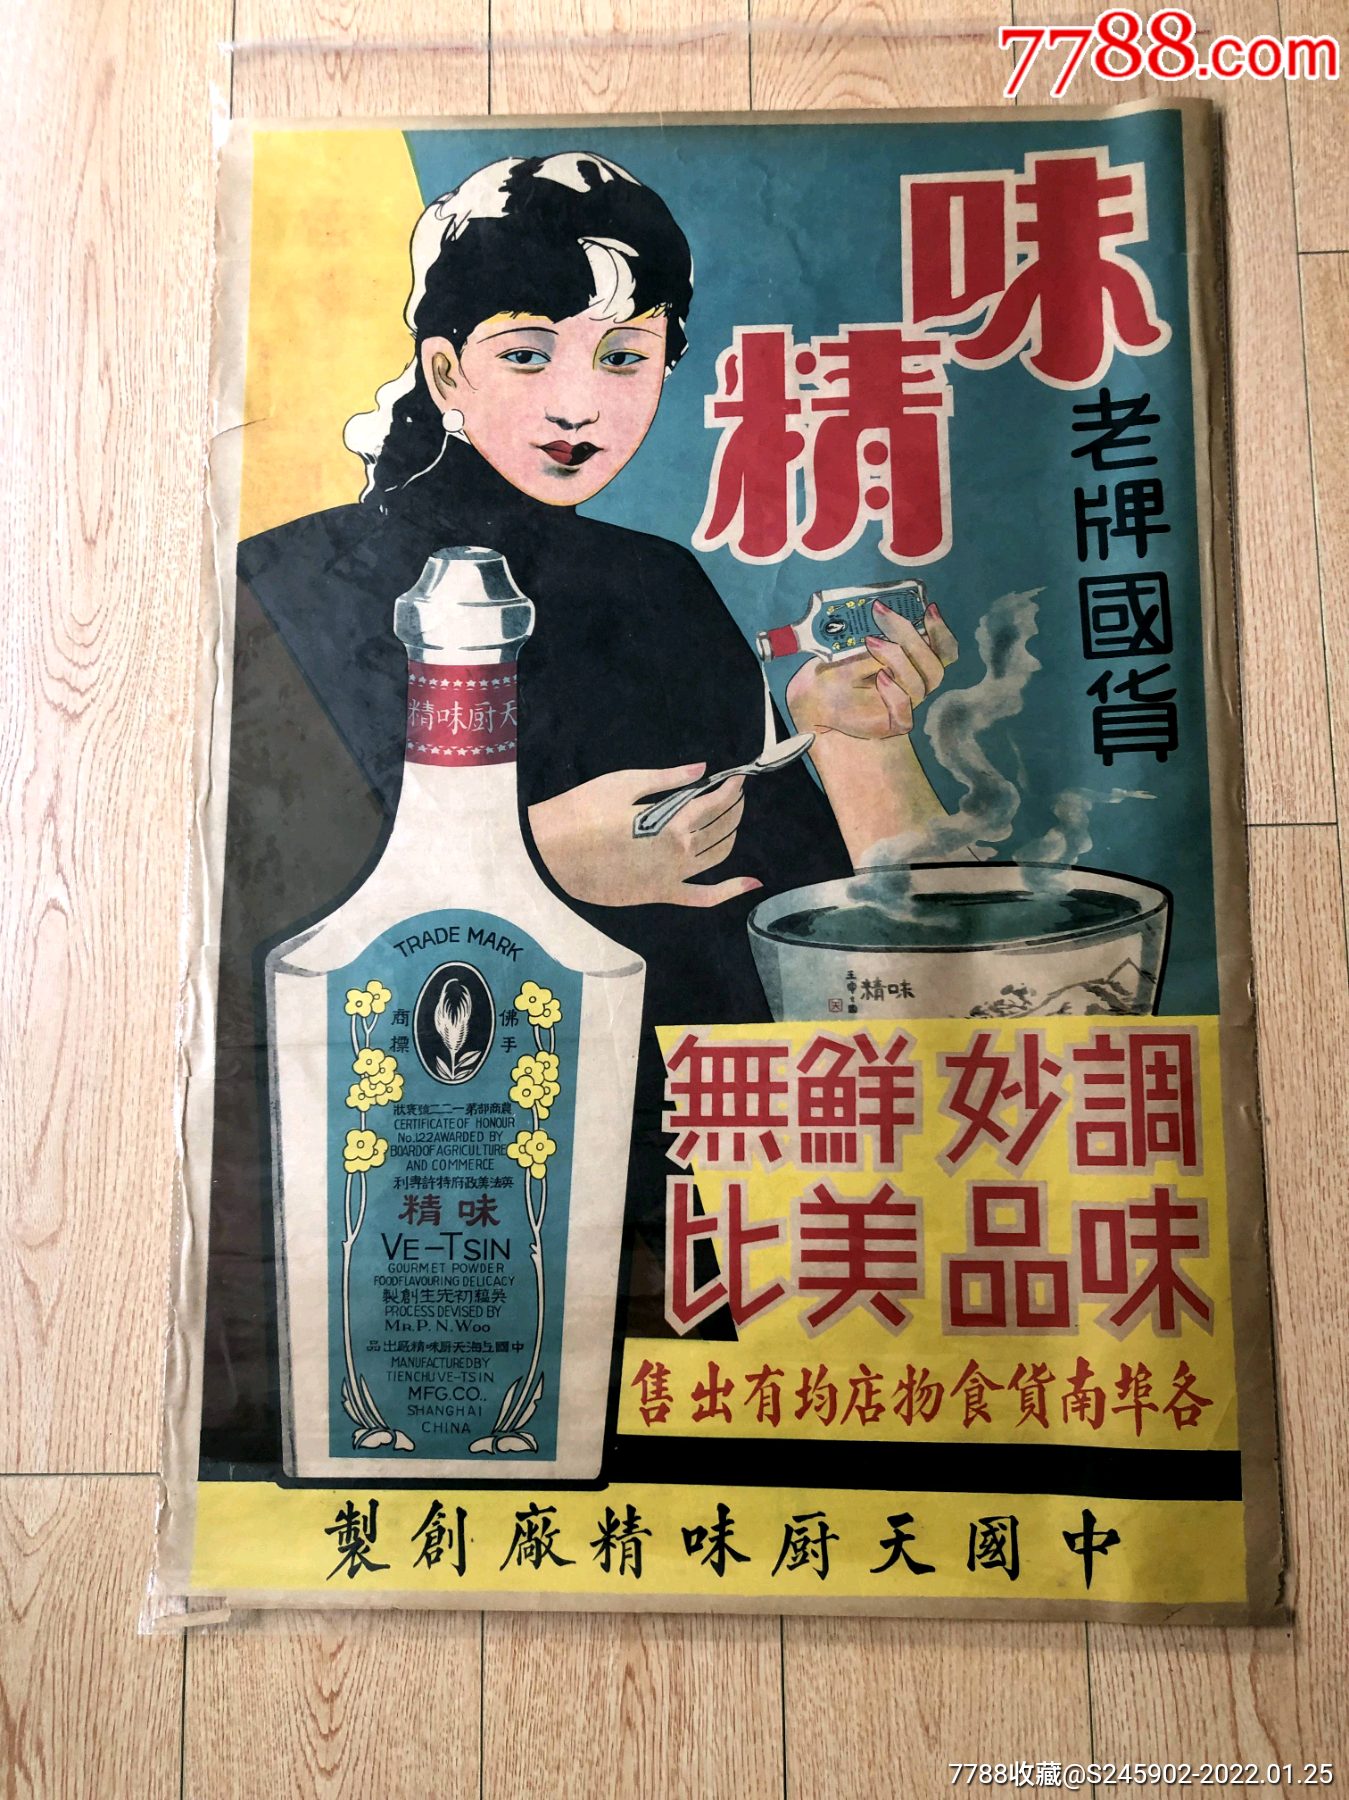 一块“佛手牌”味精老广告牌-上海档案信息网